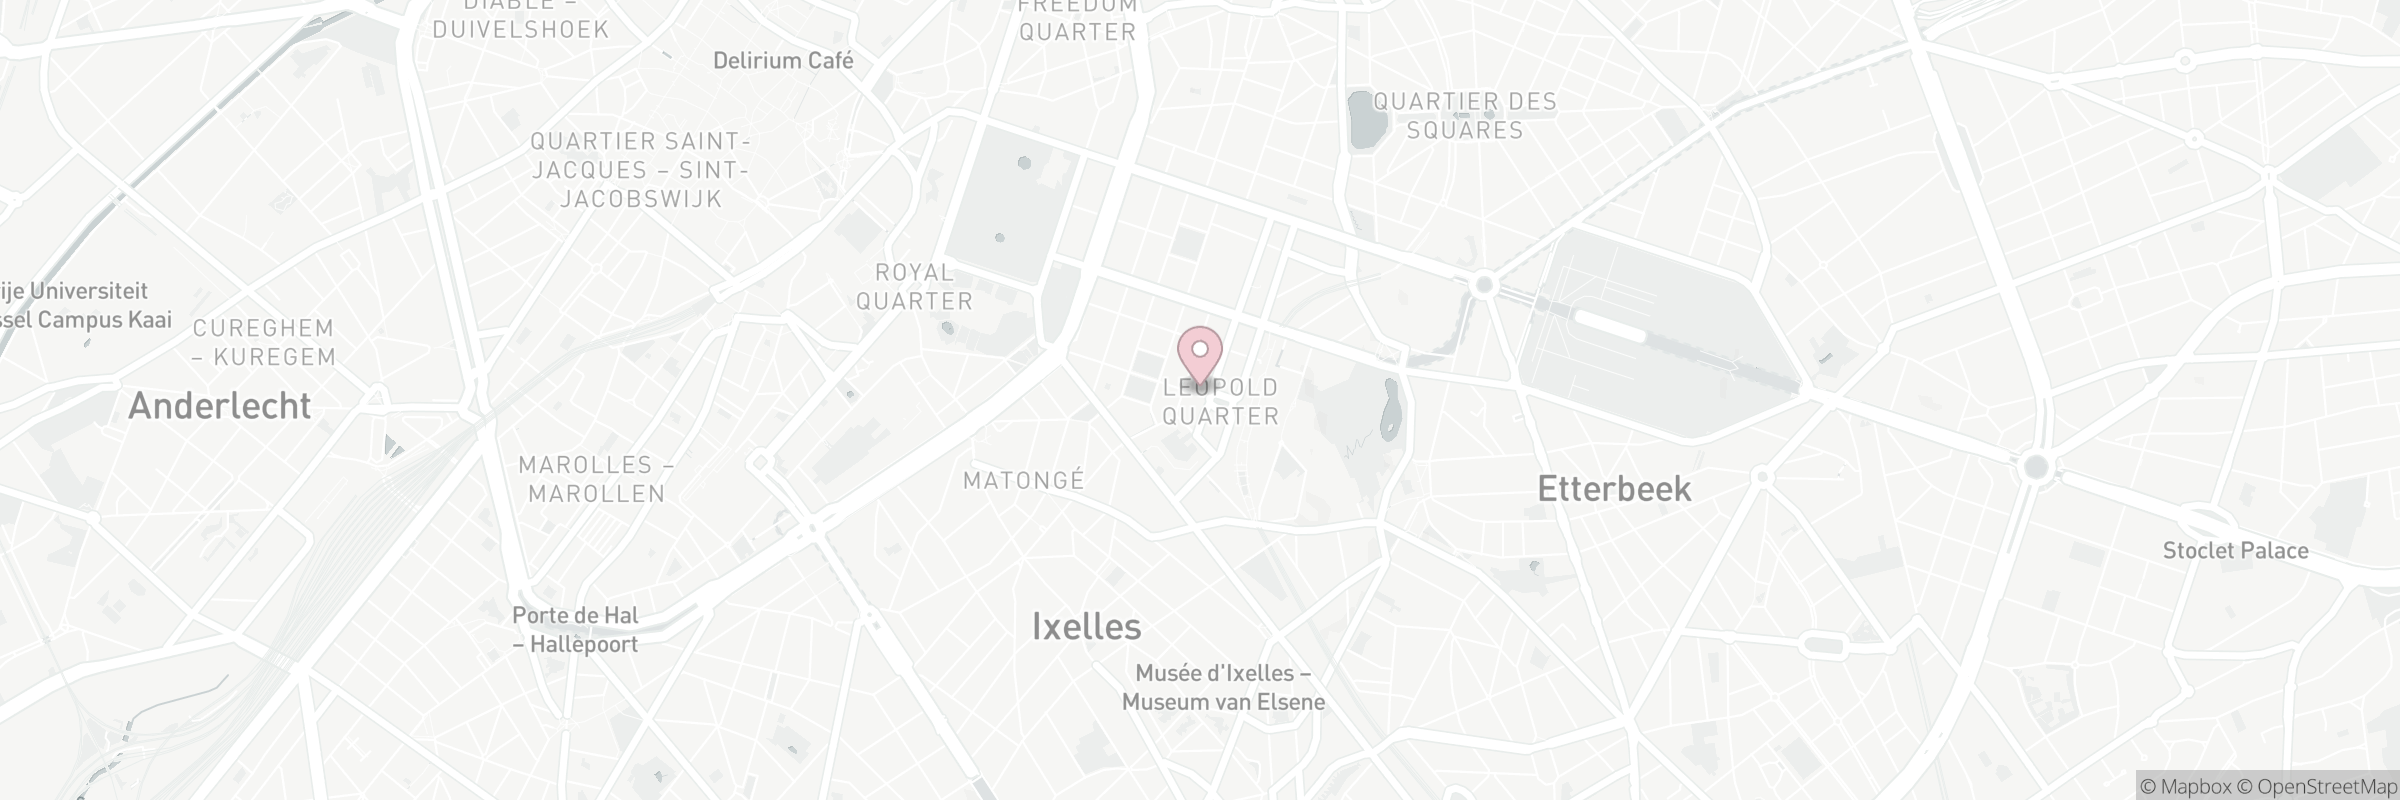 Kaart met het adres van Place du Luxembourg